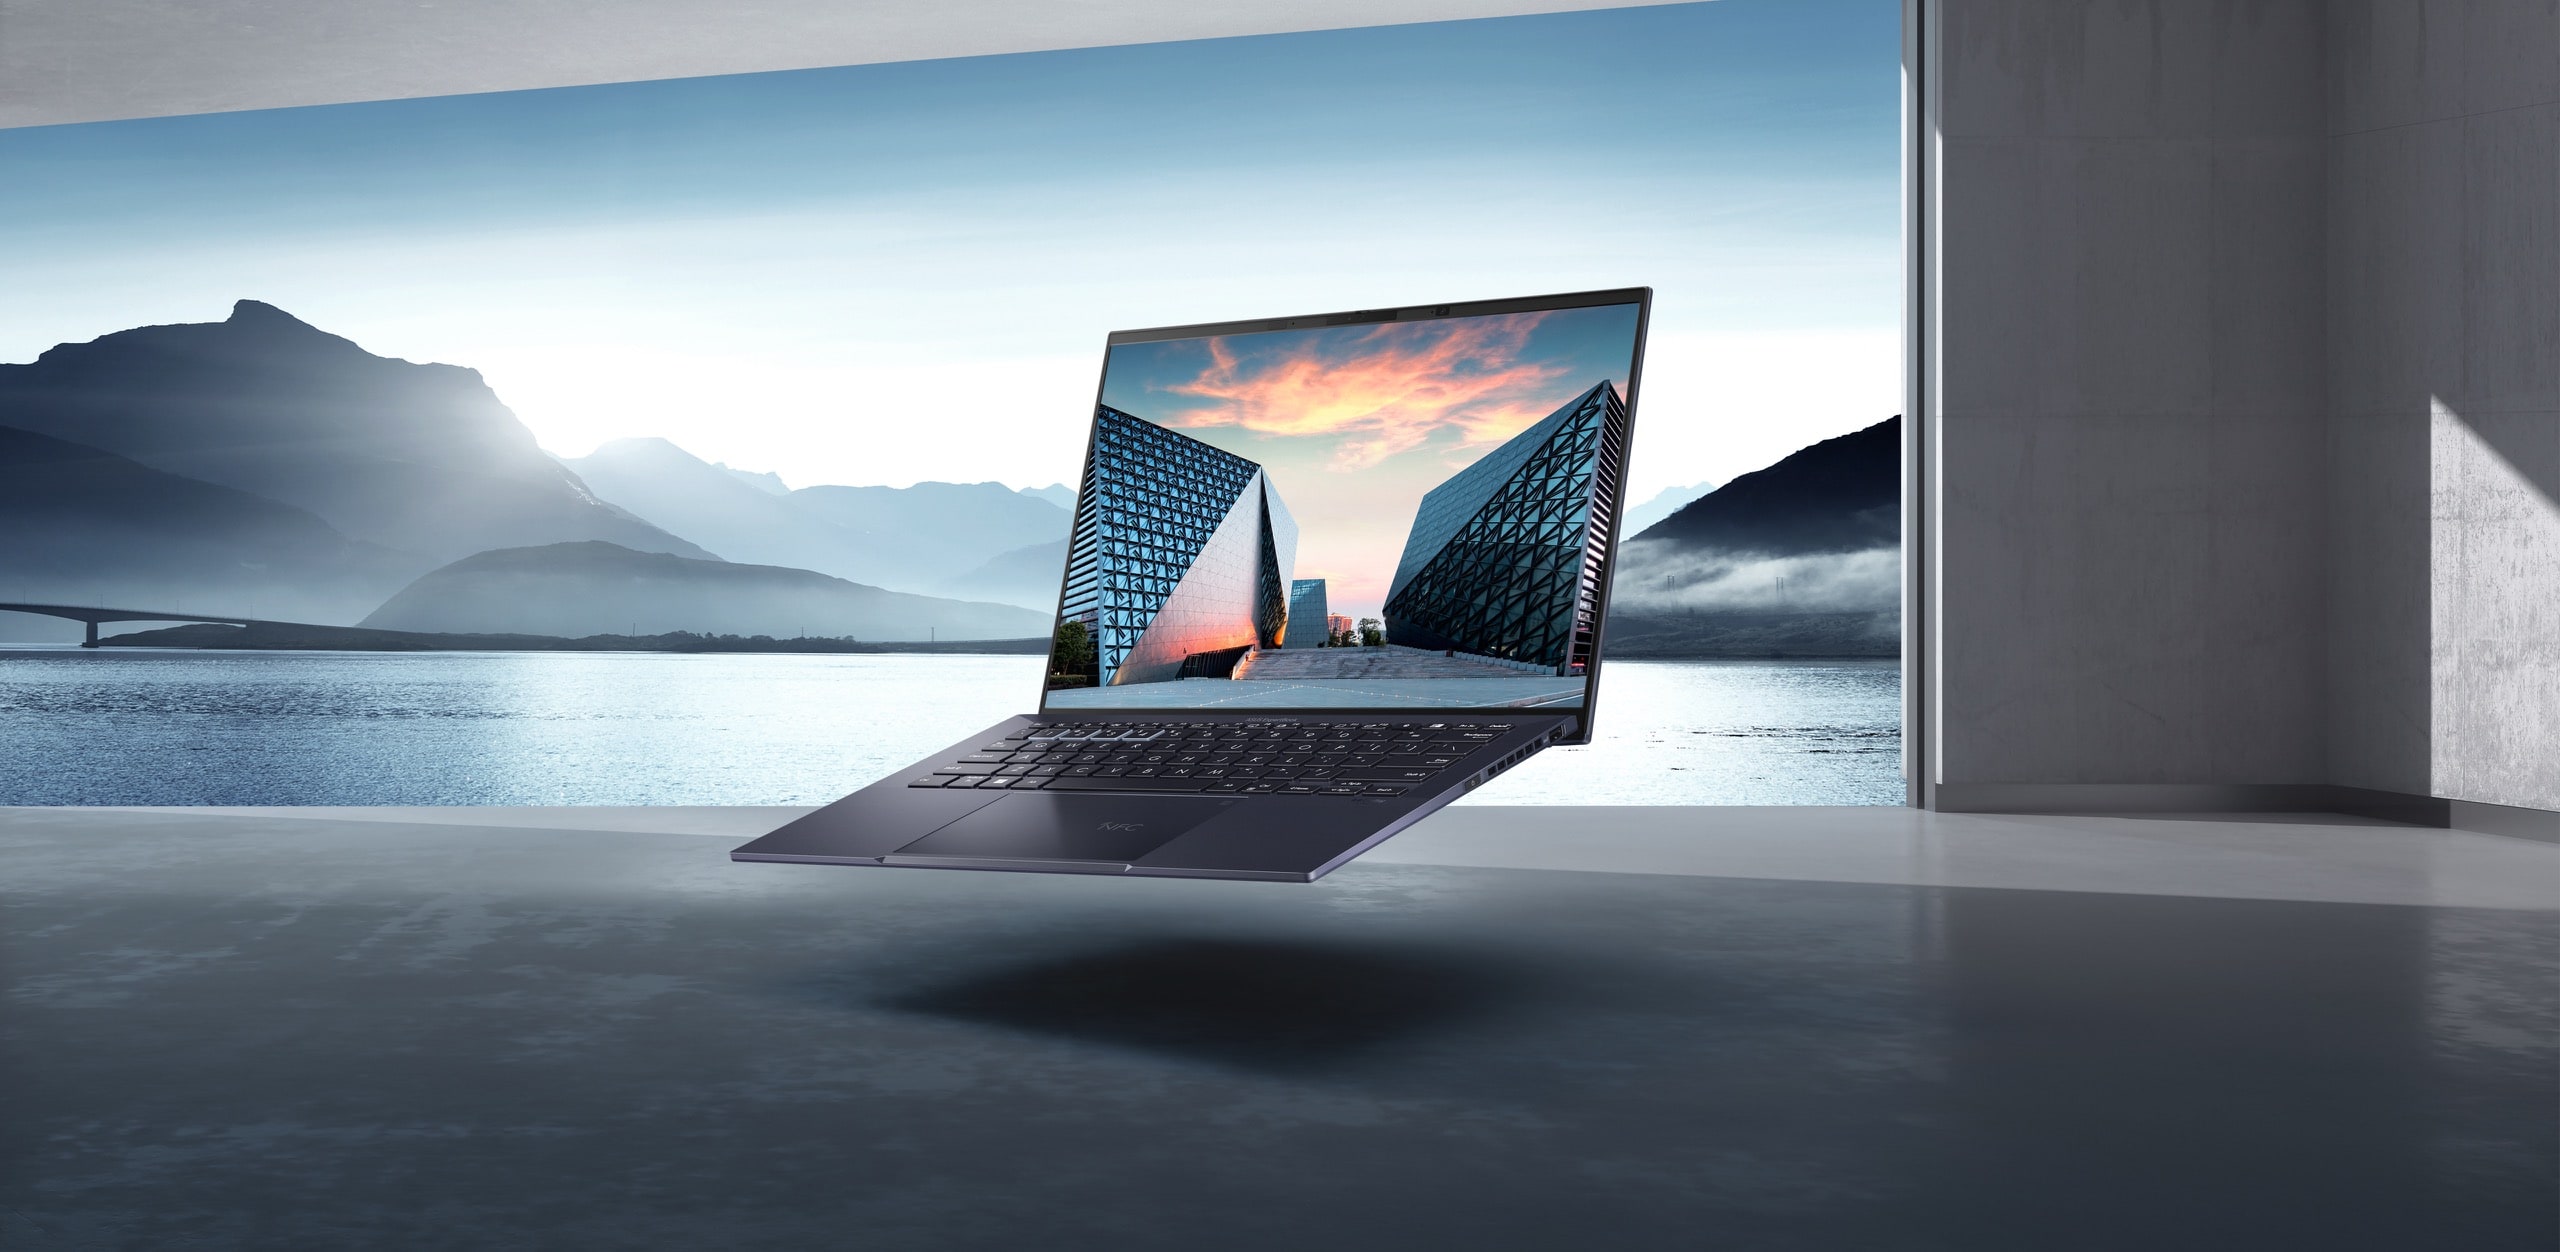   一台 ExpertBook B9 OLED漂浮在湖光山色中，呈現其輕盈特點；筆電螢幕為現代化藝術建築。